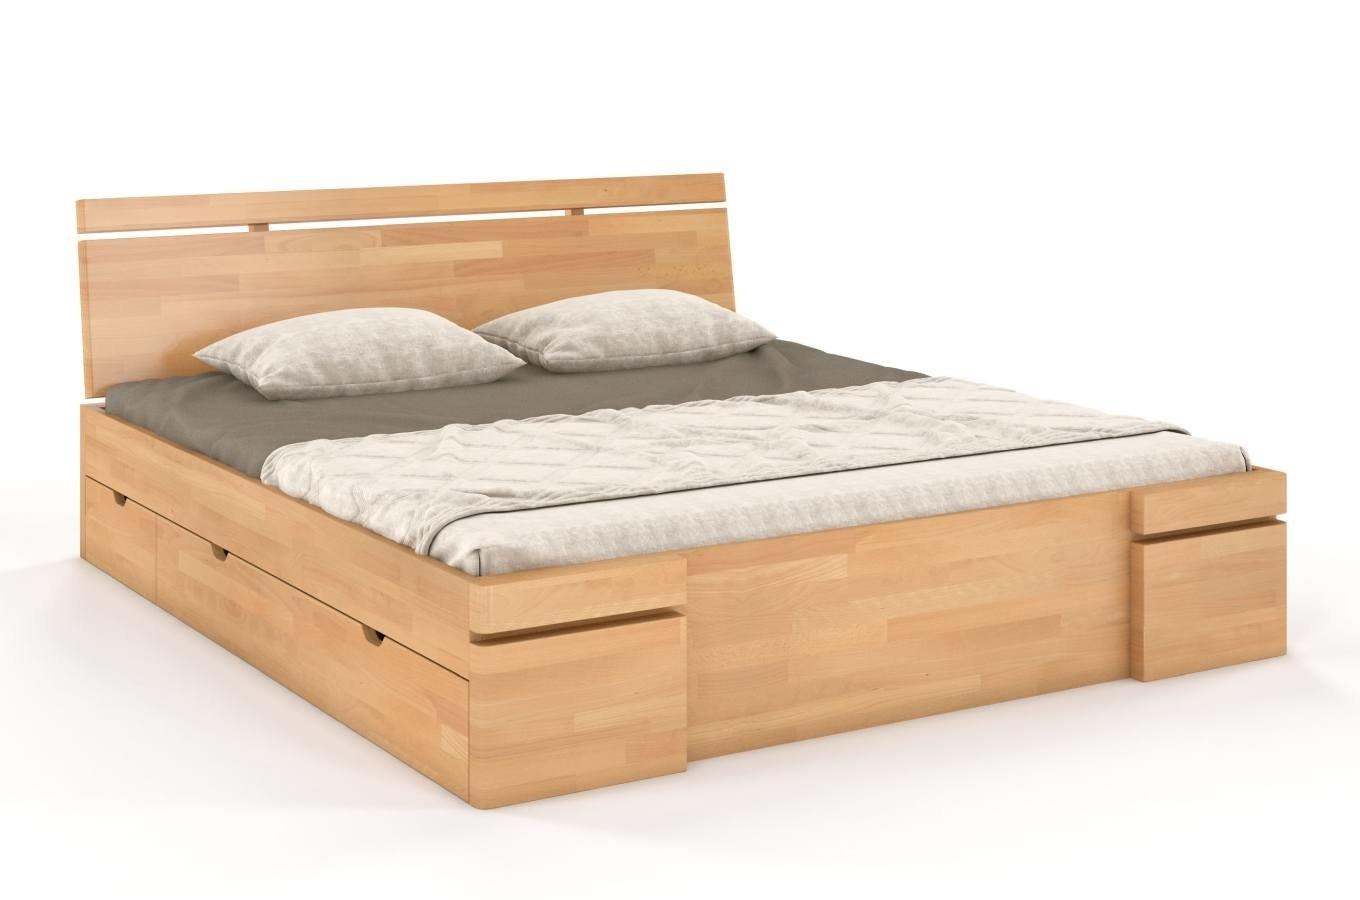 Łóżko drewniane bukowe z szufladami Skandica SPARTA Maxi & DR / 120x200 cm, kolor naturalny